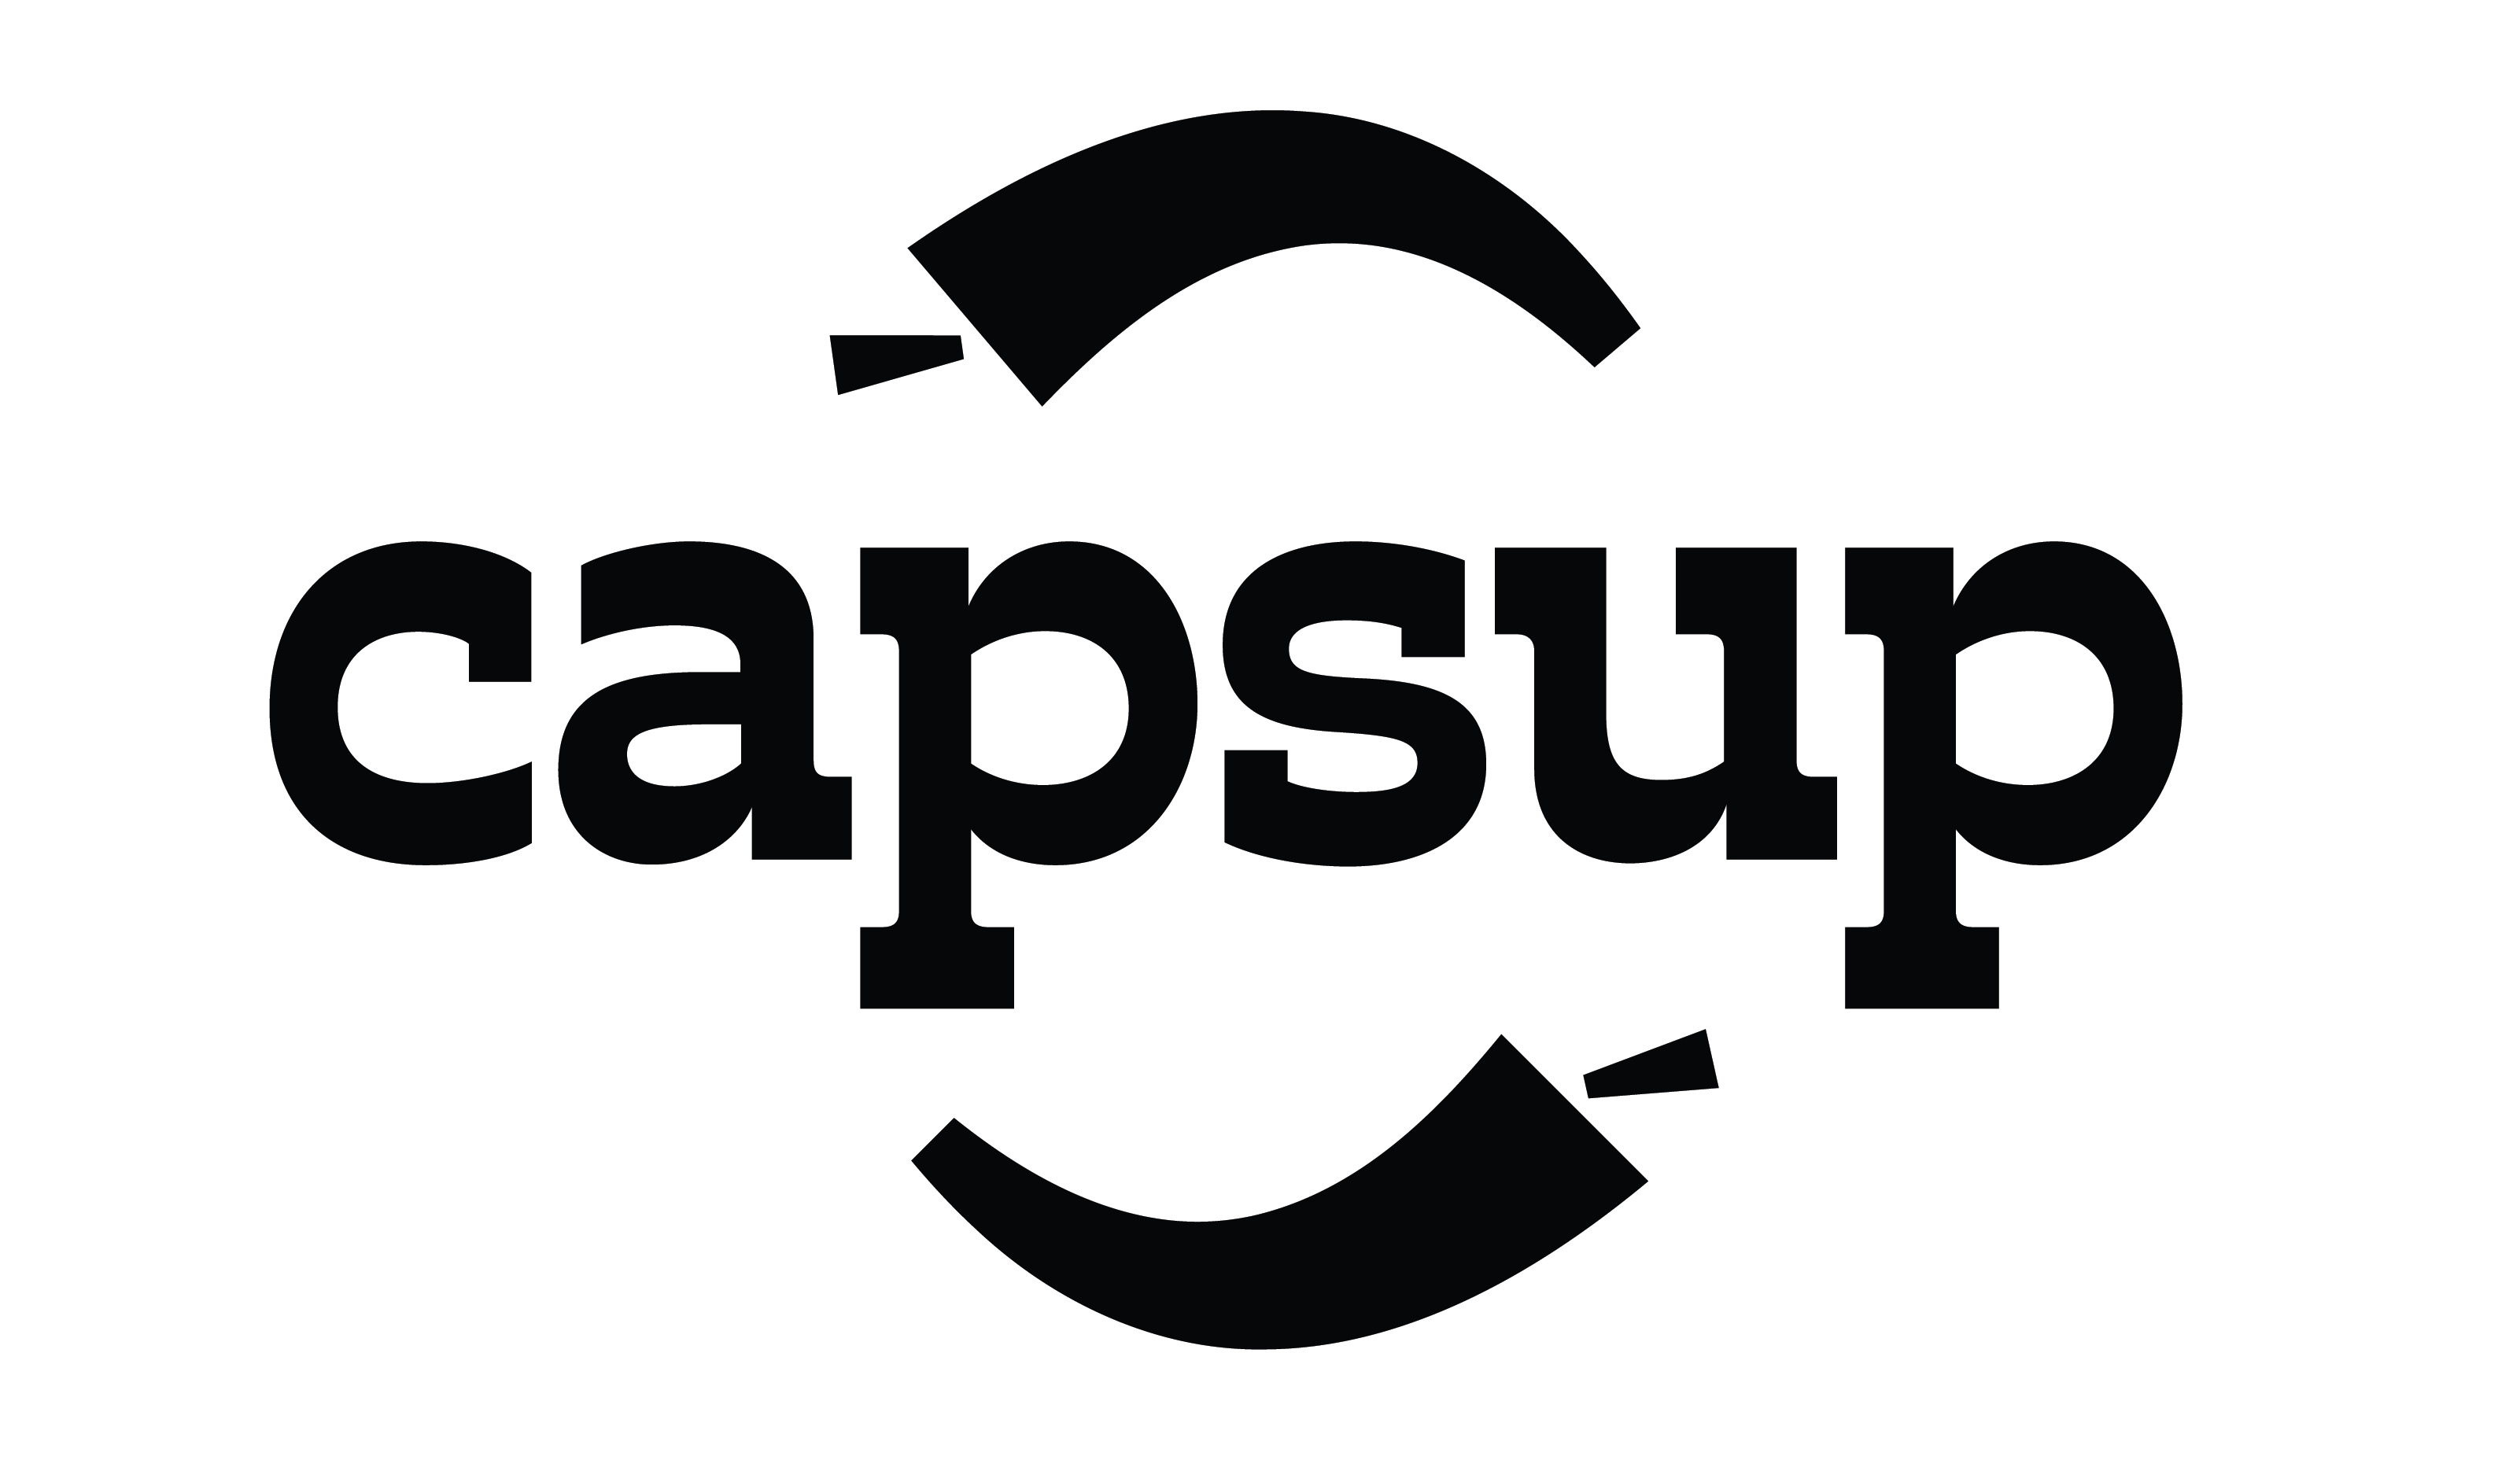 Capsup